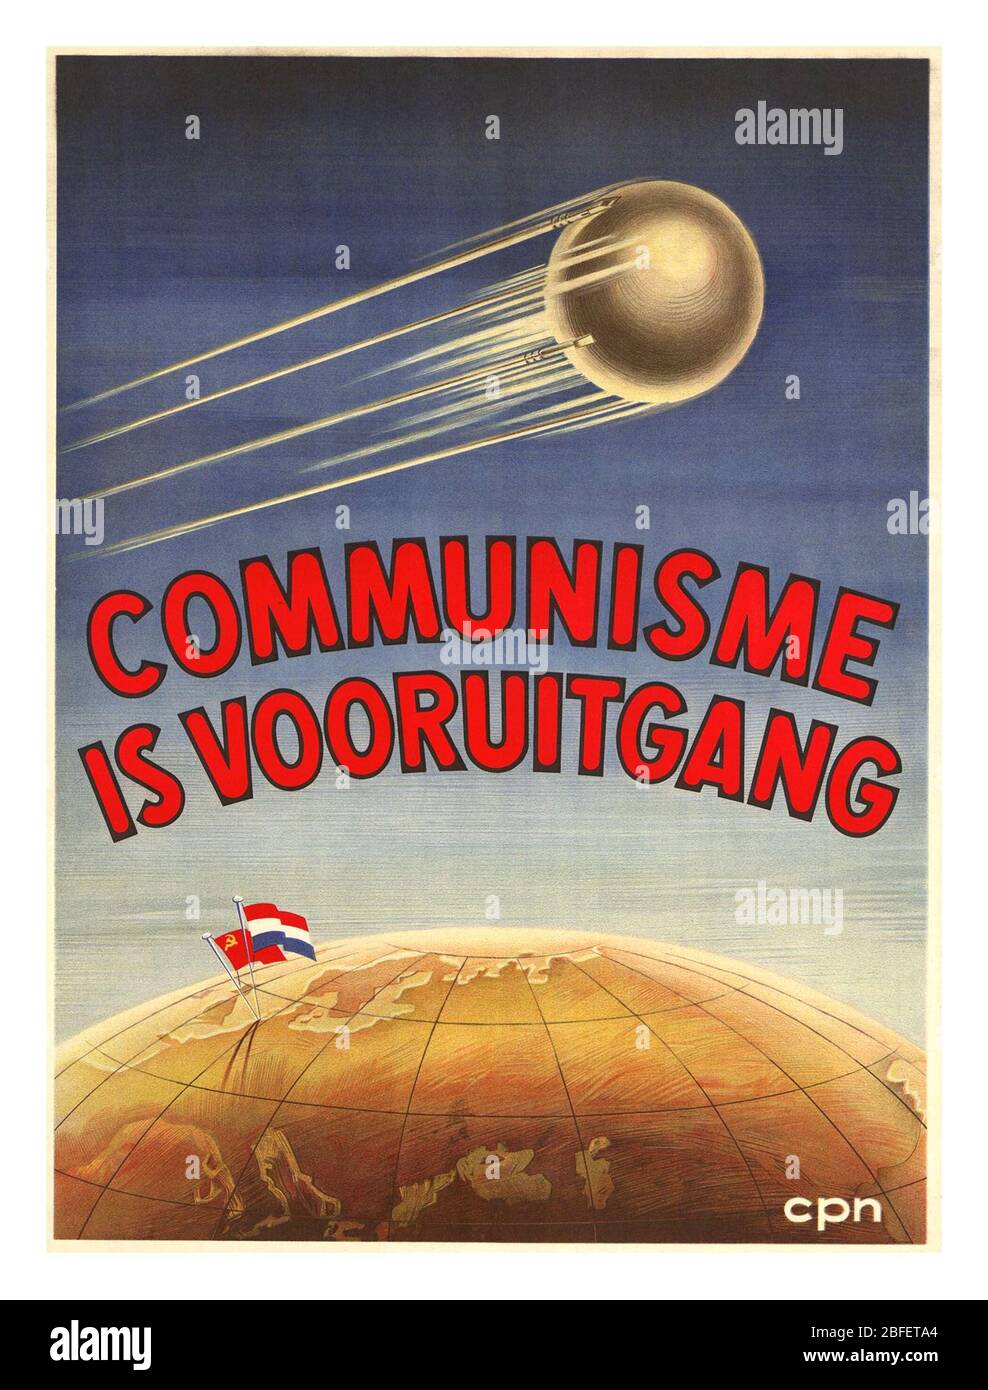 KOMMUNISMUS NIEDERLANDE Jahrgang 1950 Propaganda Poster 'Kommunismus ist Fortschritt' Kommunistische Partei der Niederlande, CPN (1957) mit einer Spaceumrakete vom typ sputnik, die durch den Weltraum rast Stockfoto